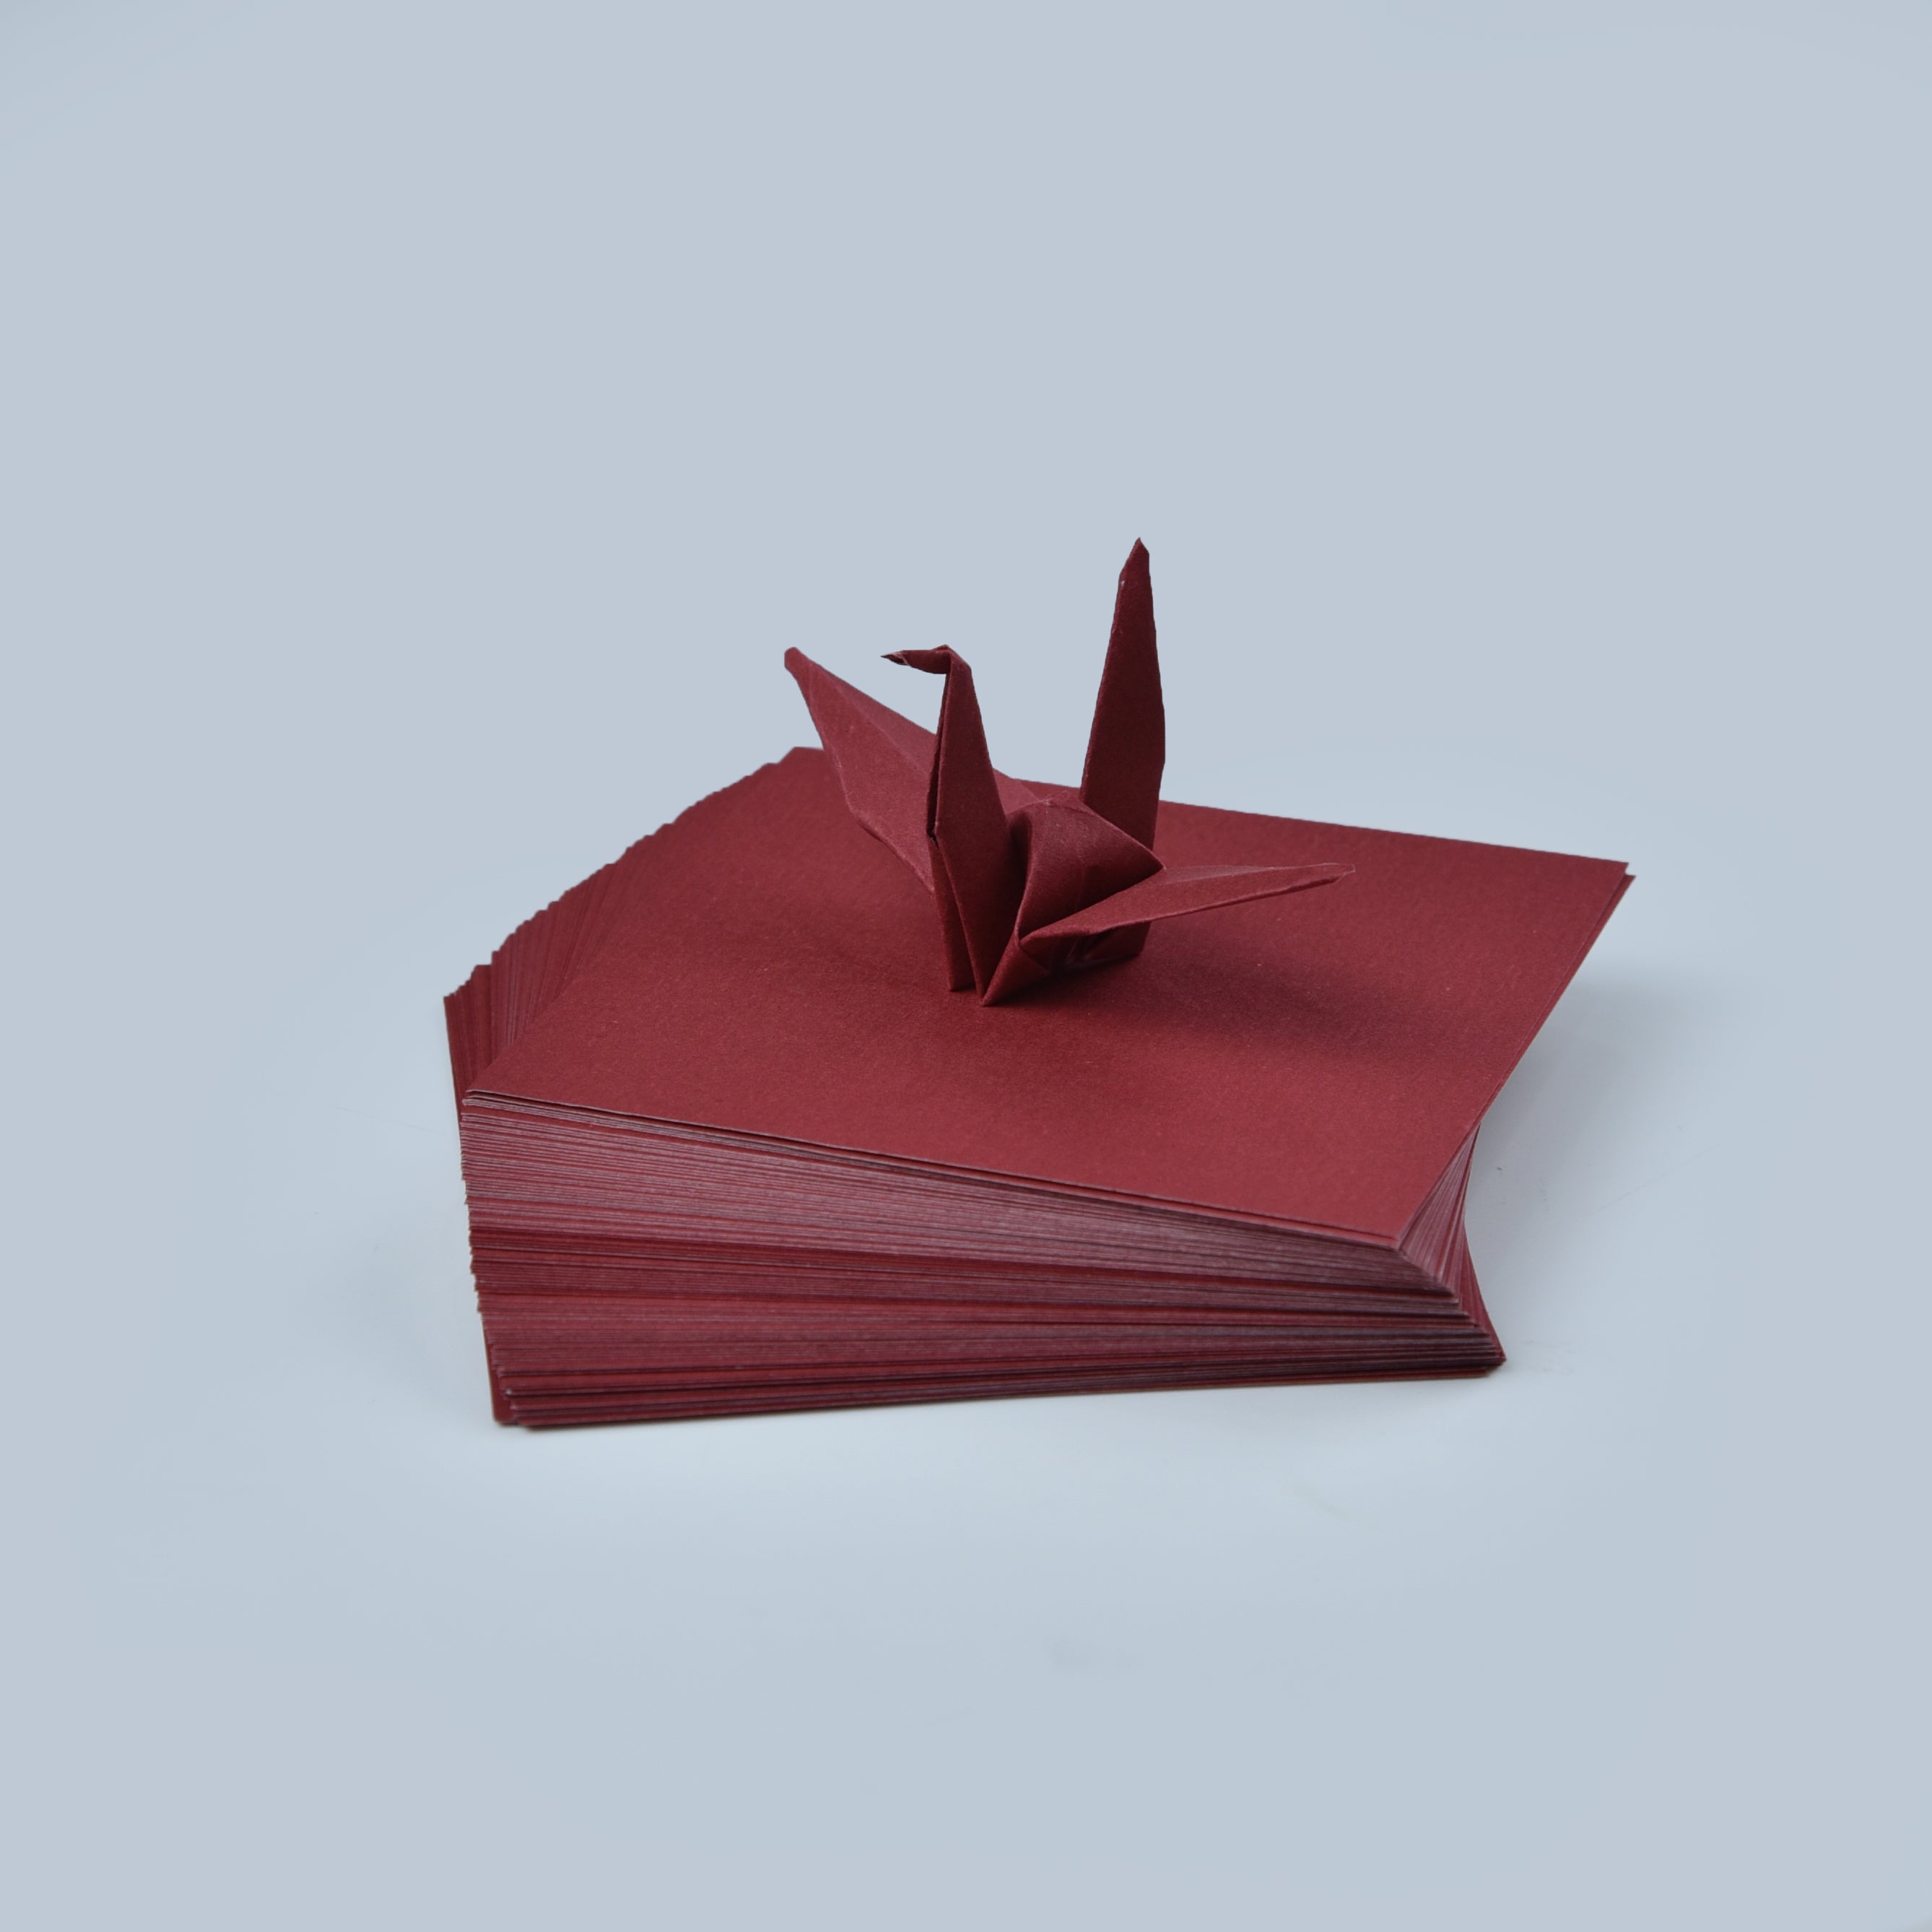 100 fogli di carta origami - 3x3 pollici - Confezione di carta quadrata per piegare, gru origami e decorazioni - S06